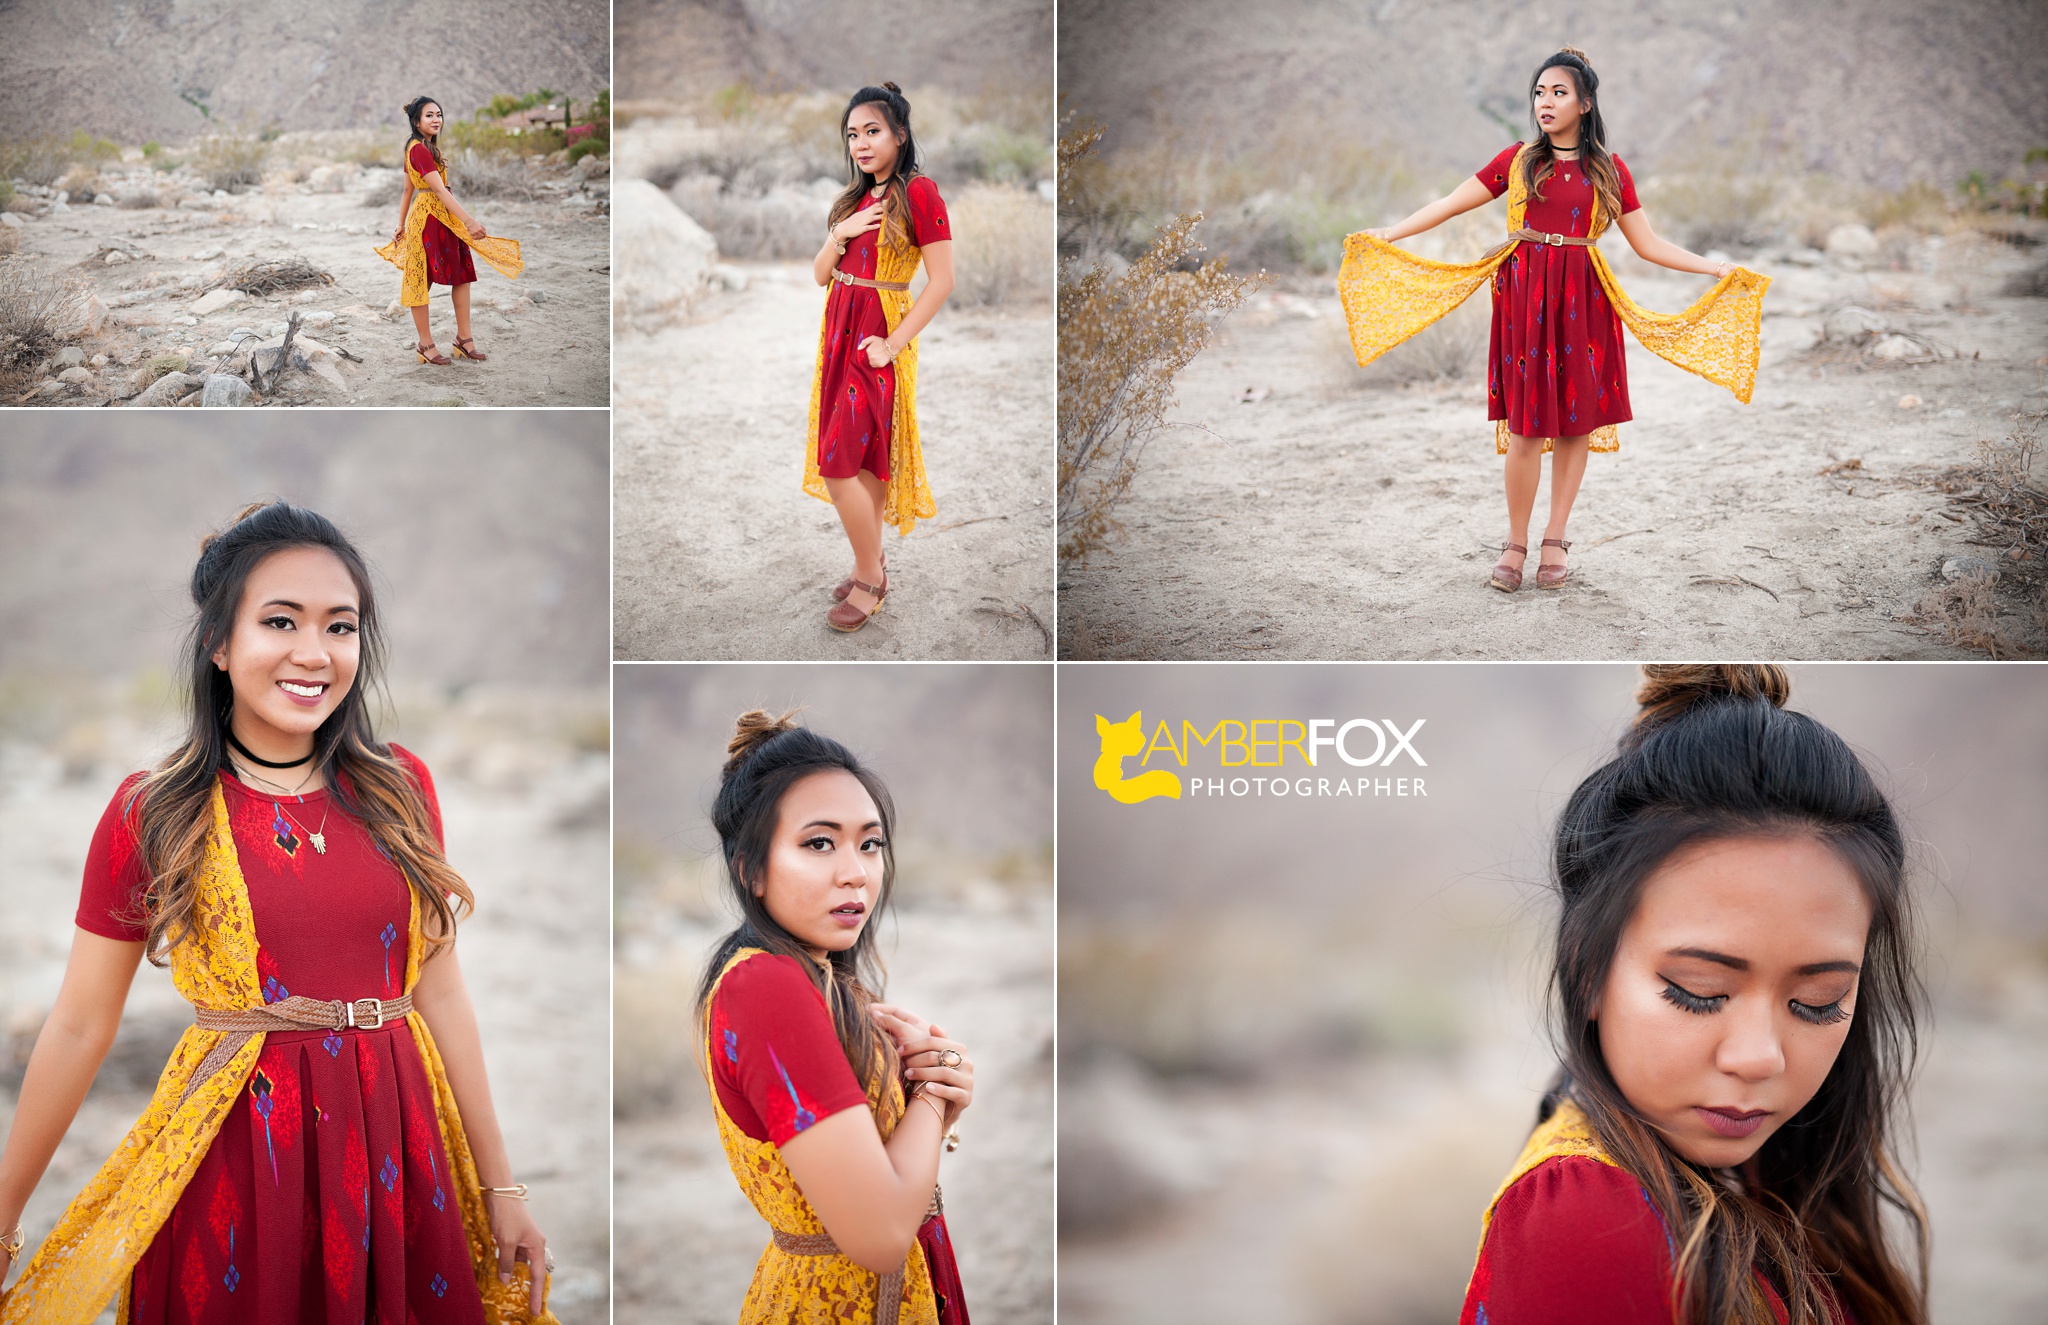 Amber Fox Photo, Palm Spring Desert Shoot, OC Senior Pictures